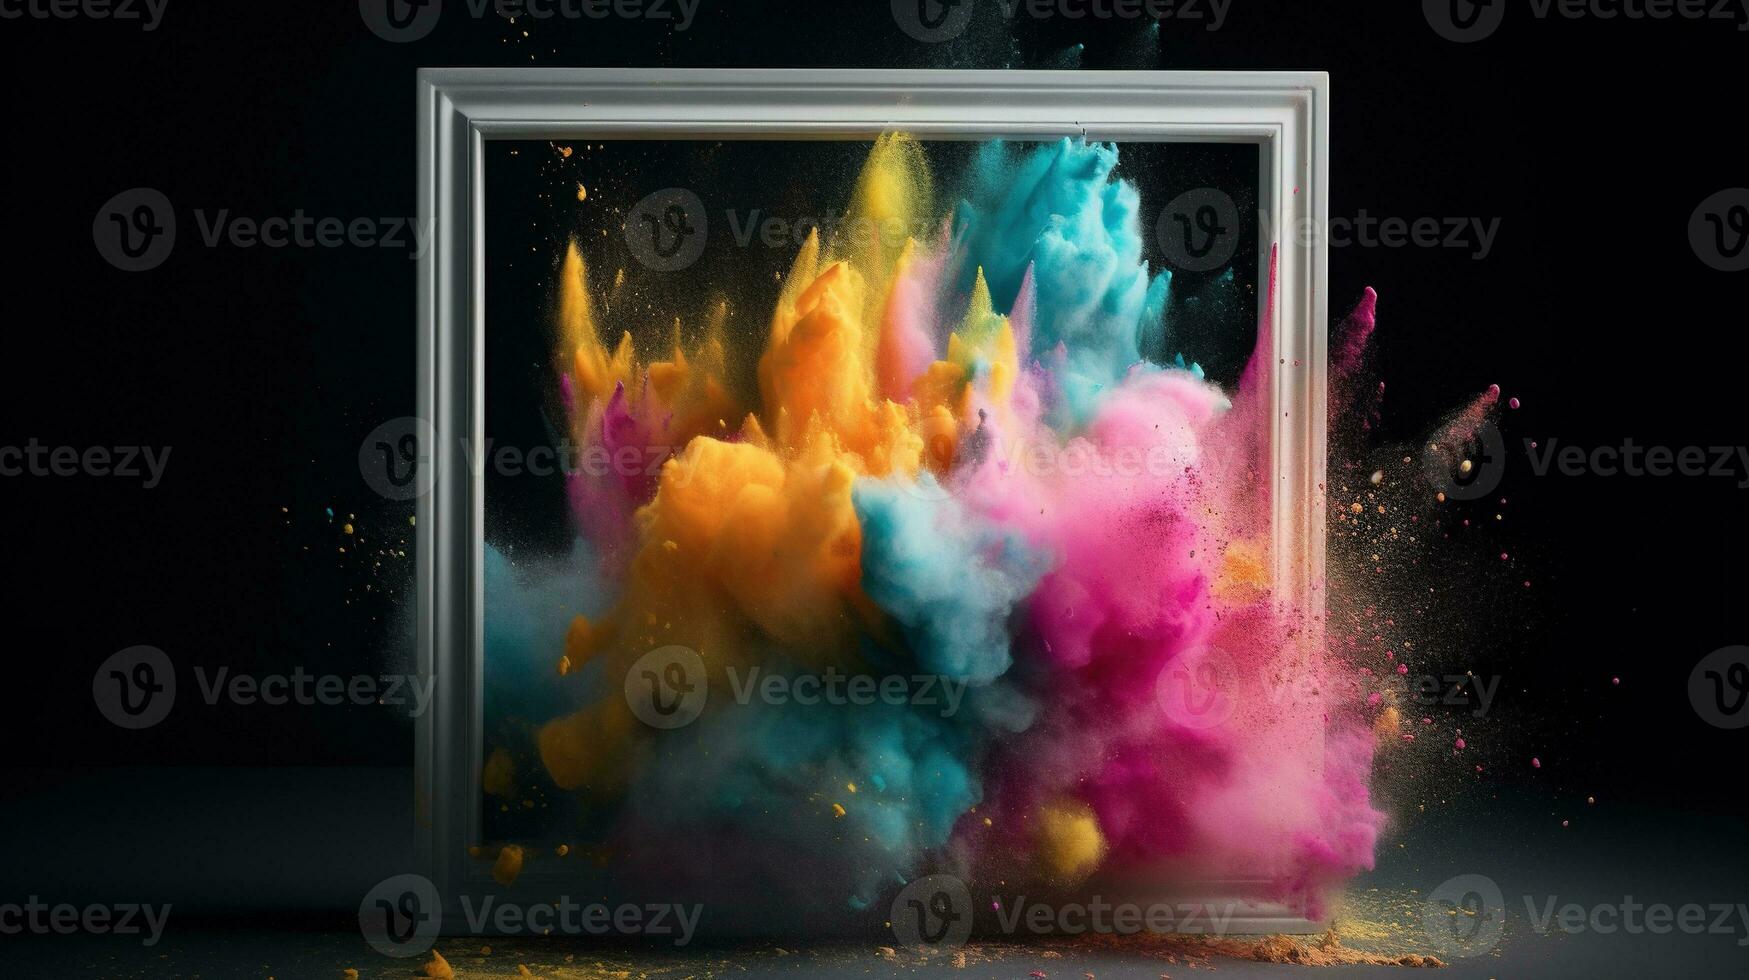 generatief ai, kader met kleurrijk holi poeder verf explosie, creatief plons, veelkleurig wolk foto